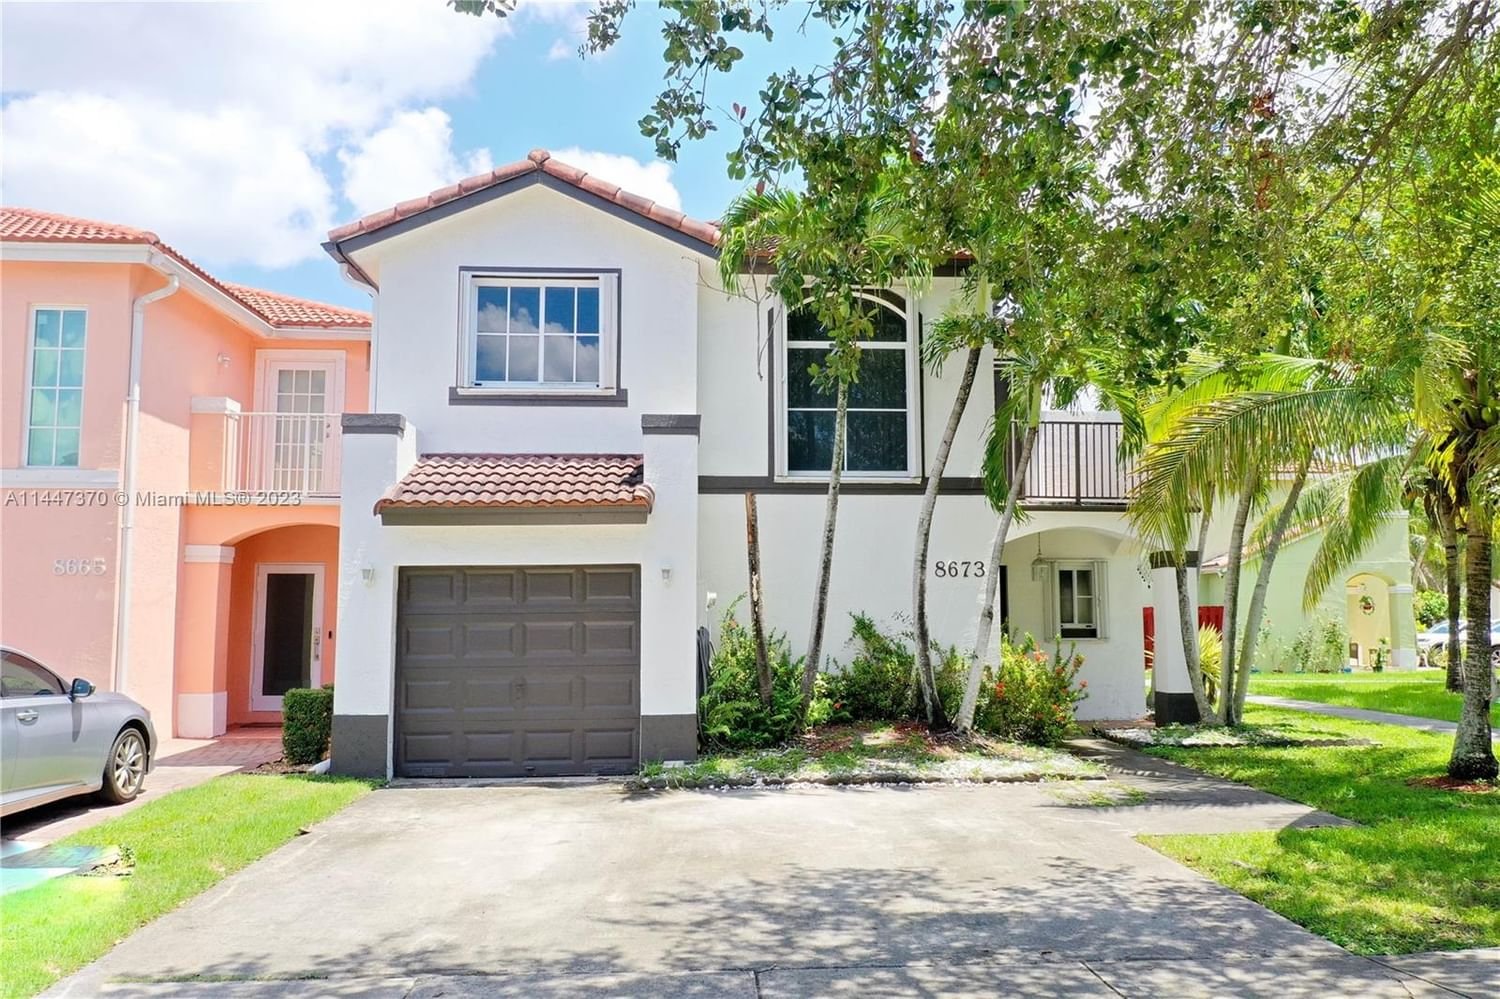 Real estate property located at 8673 159th Ct, Miami-Dade County, BRISTOL POINTE, Miami, FL